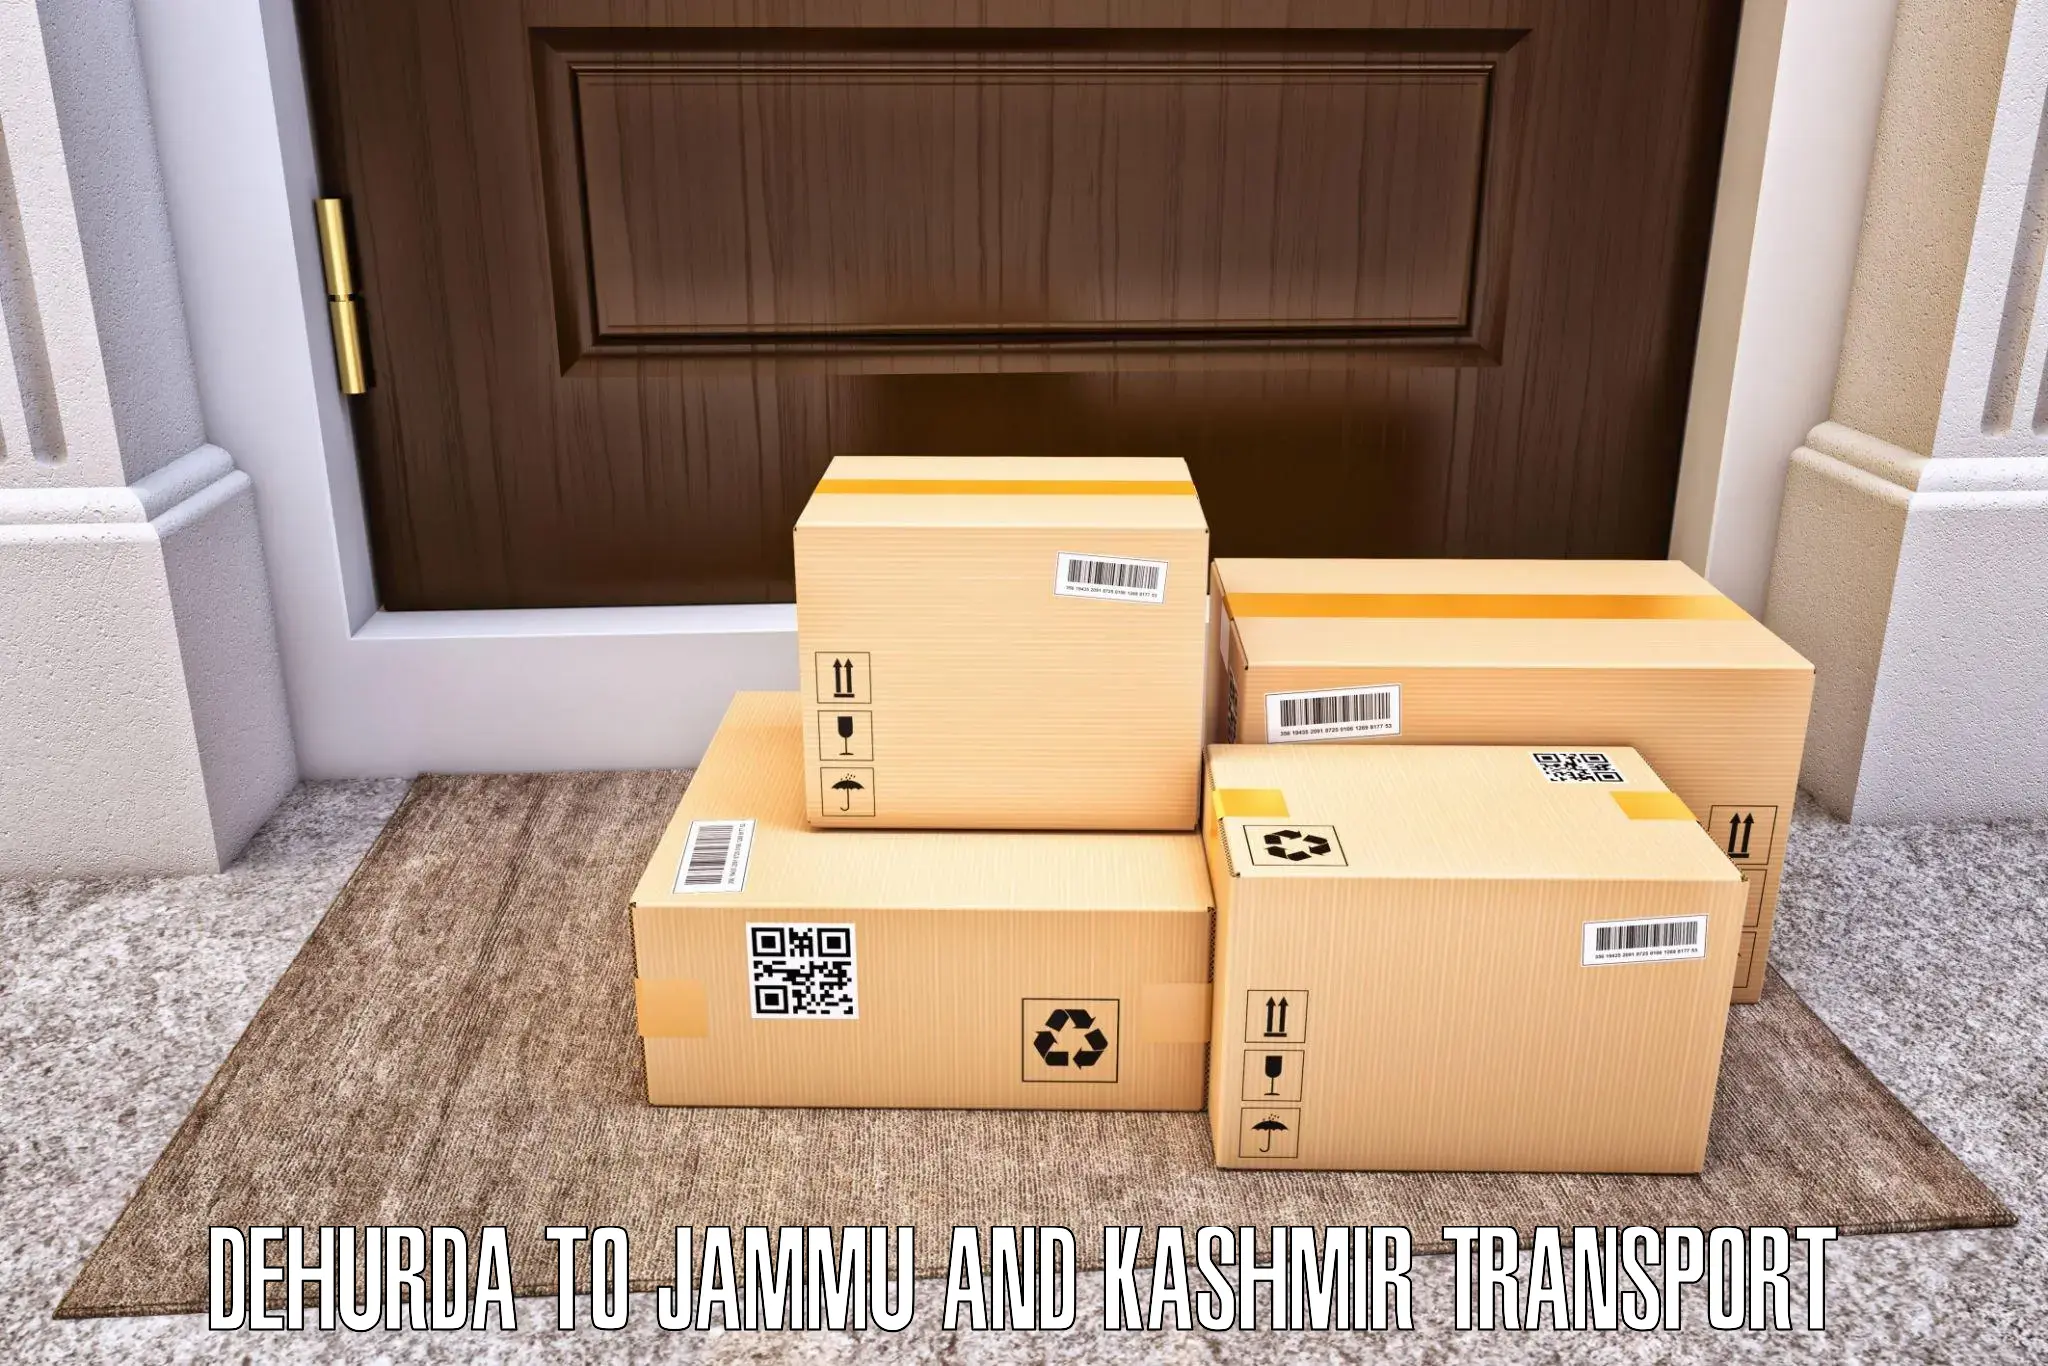 Online transport booking Dehurda to Ramban